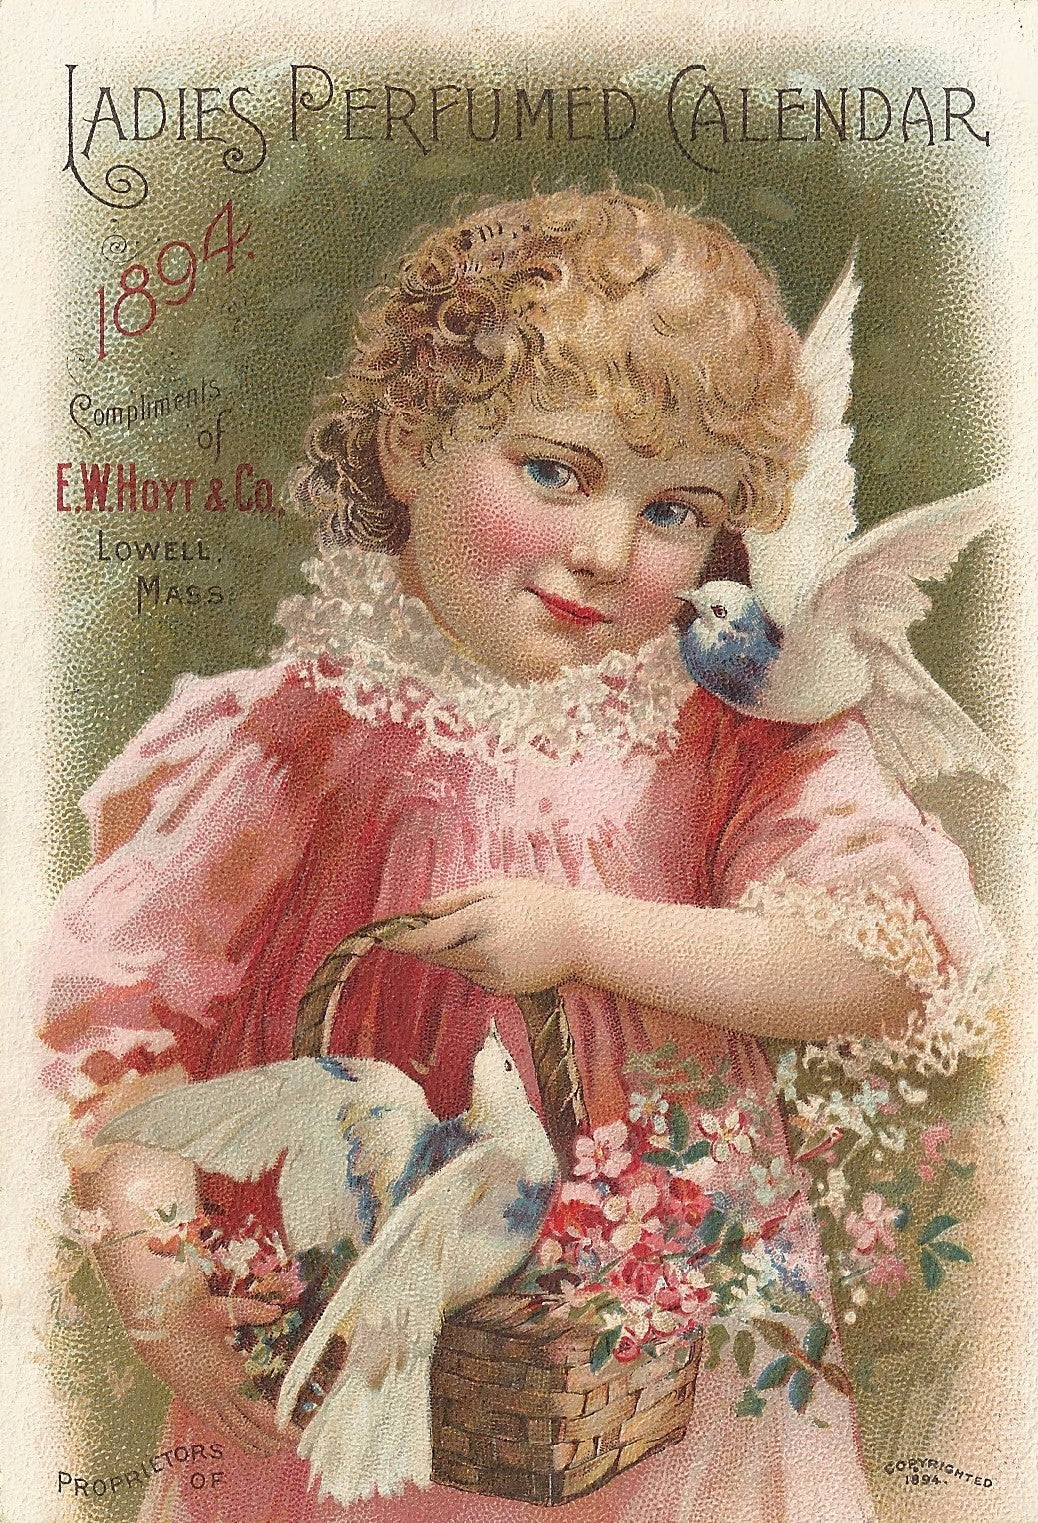 1894 Vintage Perfume Calendar - Ephemera - Ladies Perfumed Calendar Cover